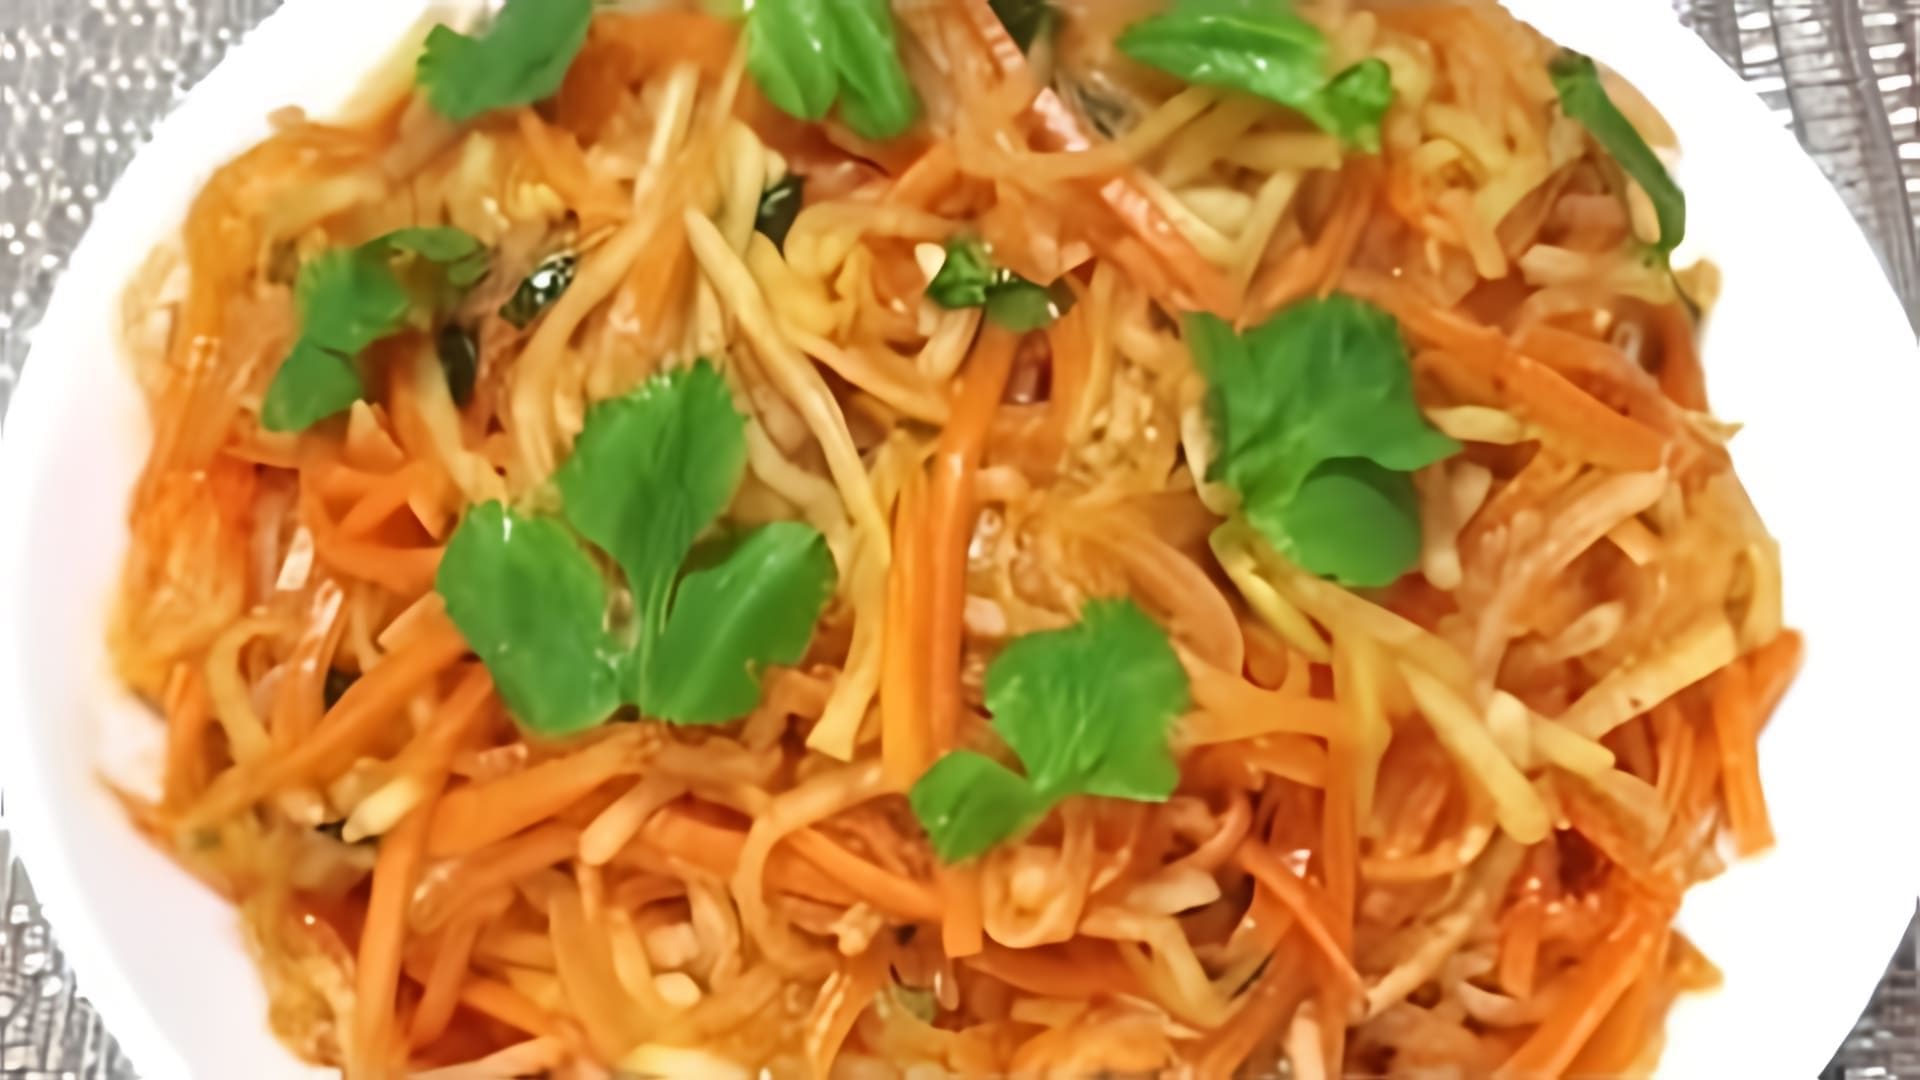 В этом видео демонстрируется рецепт приготовления вкусного салата из редьки и моркови по-корейски